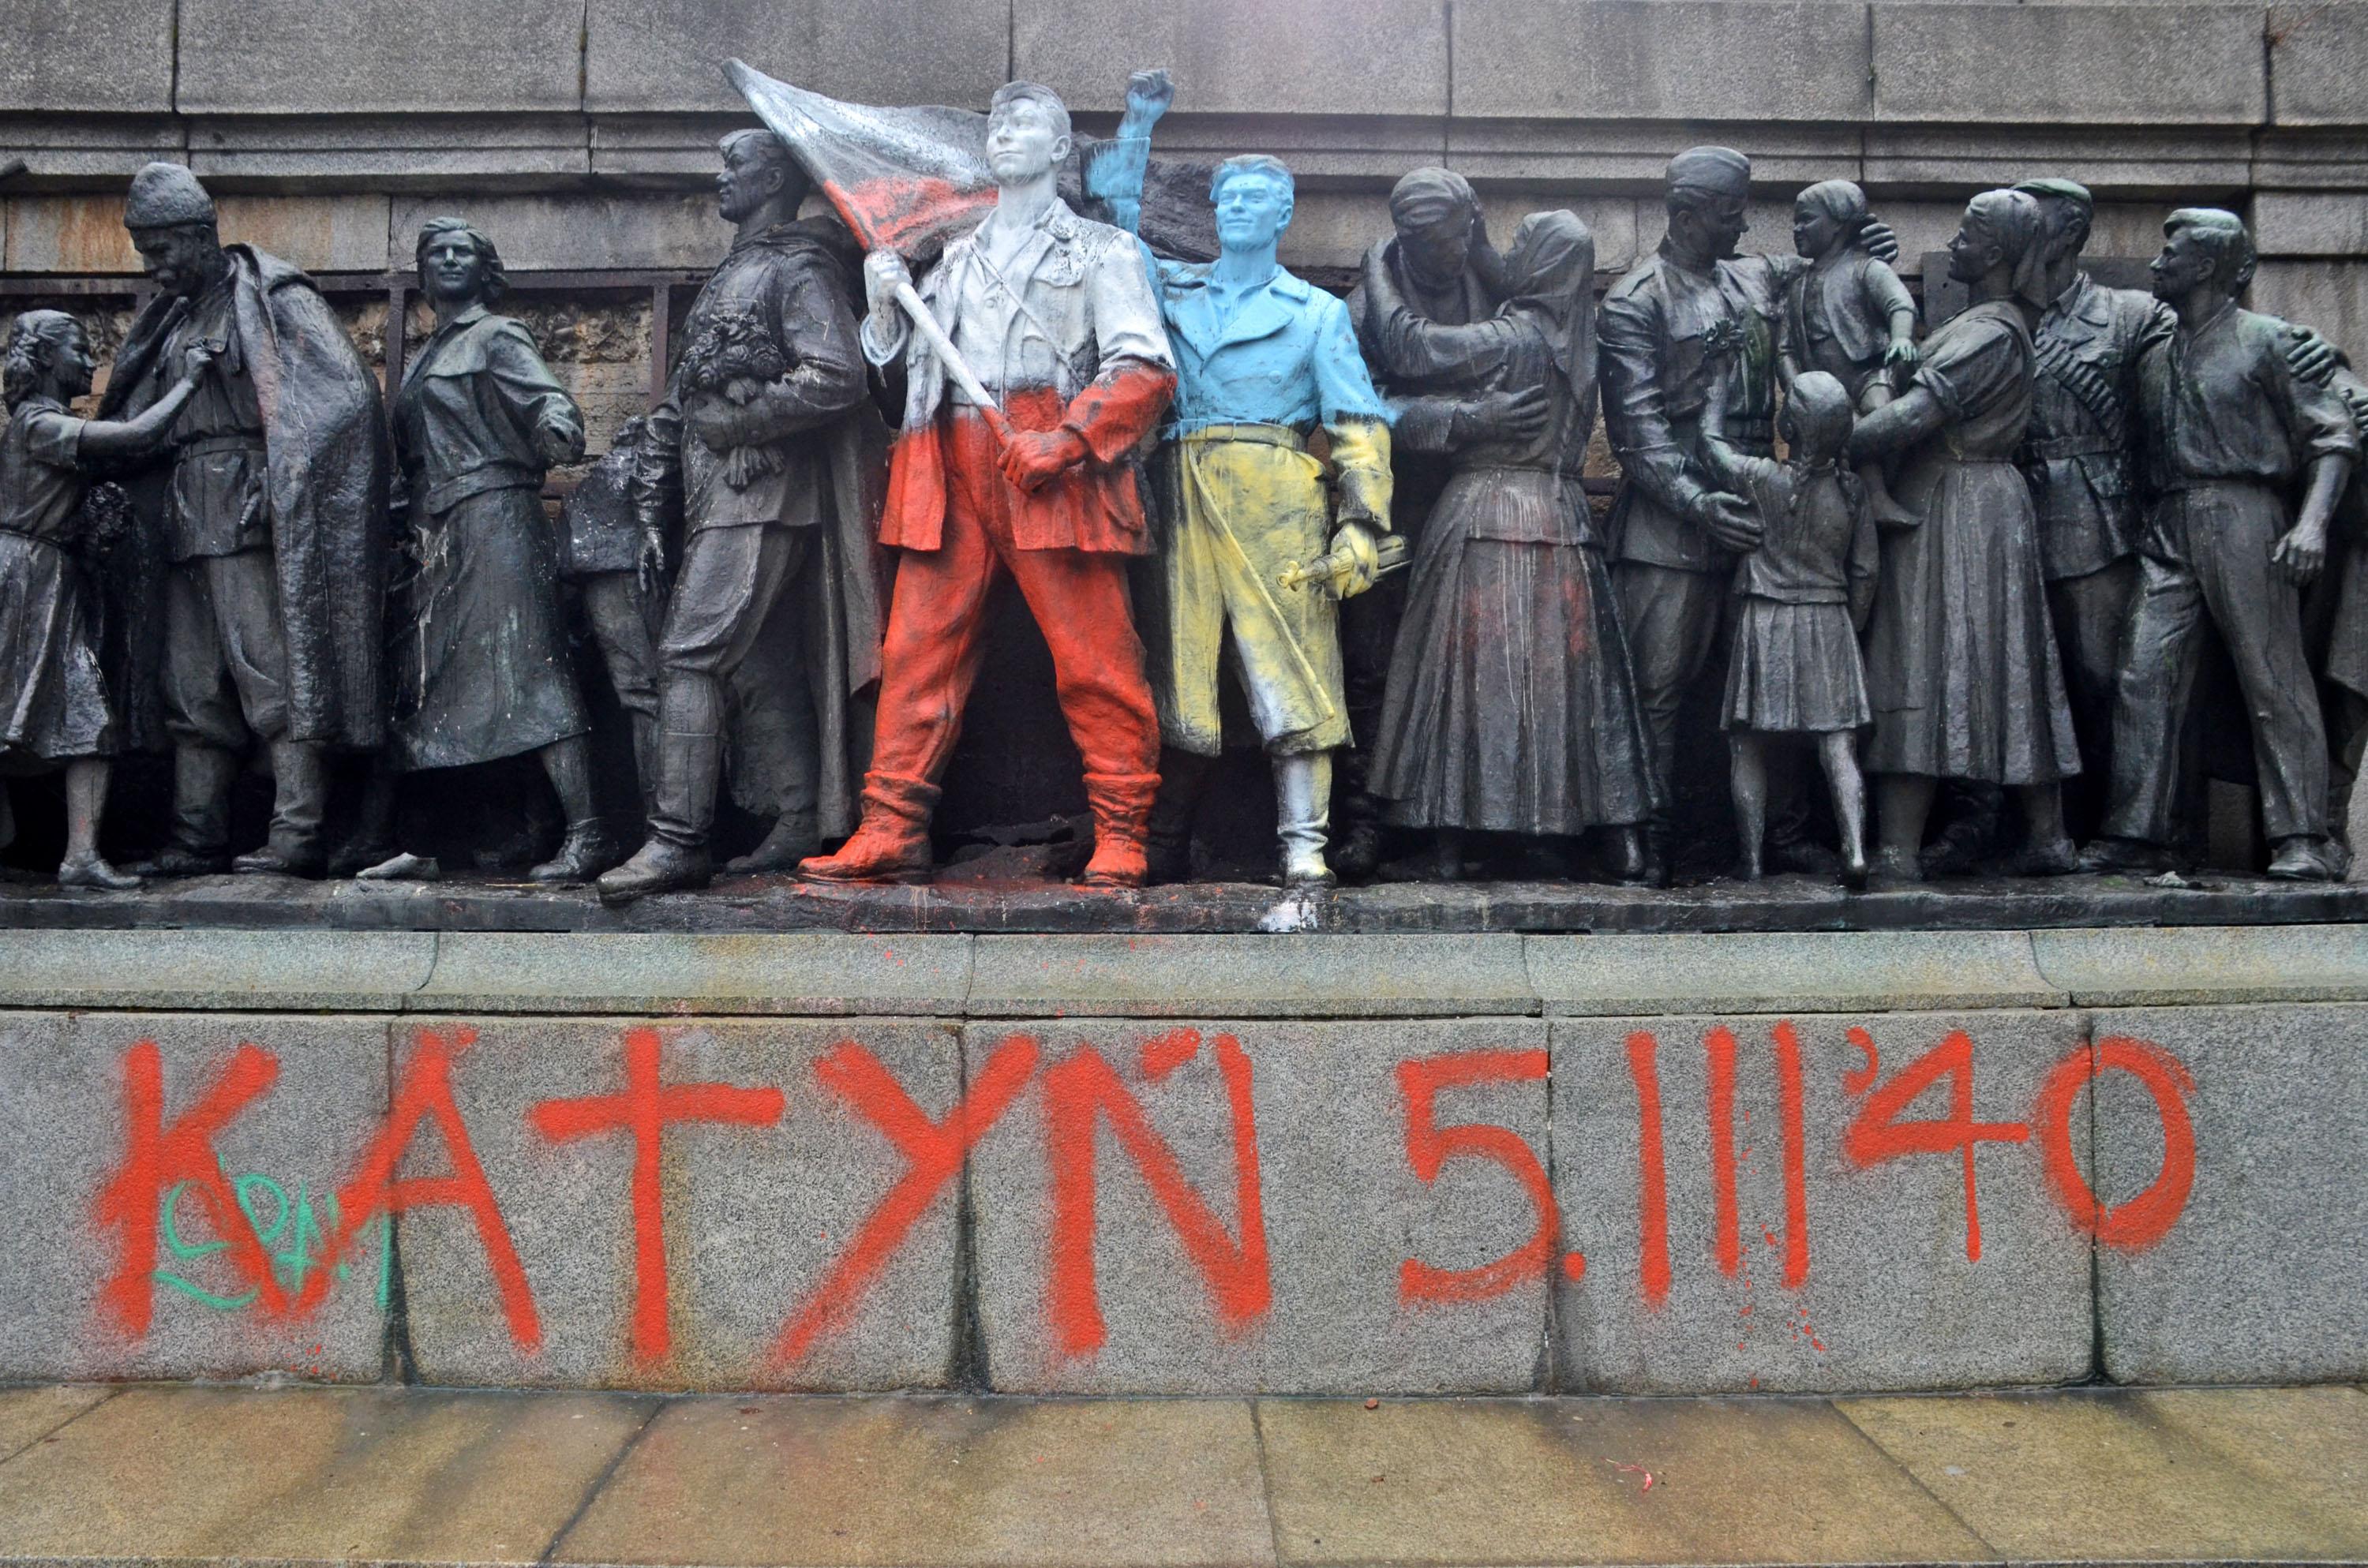 Годишнина на Катинското клане отбелязана с графити (снимки)